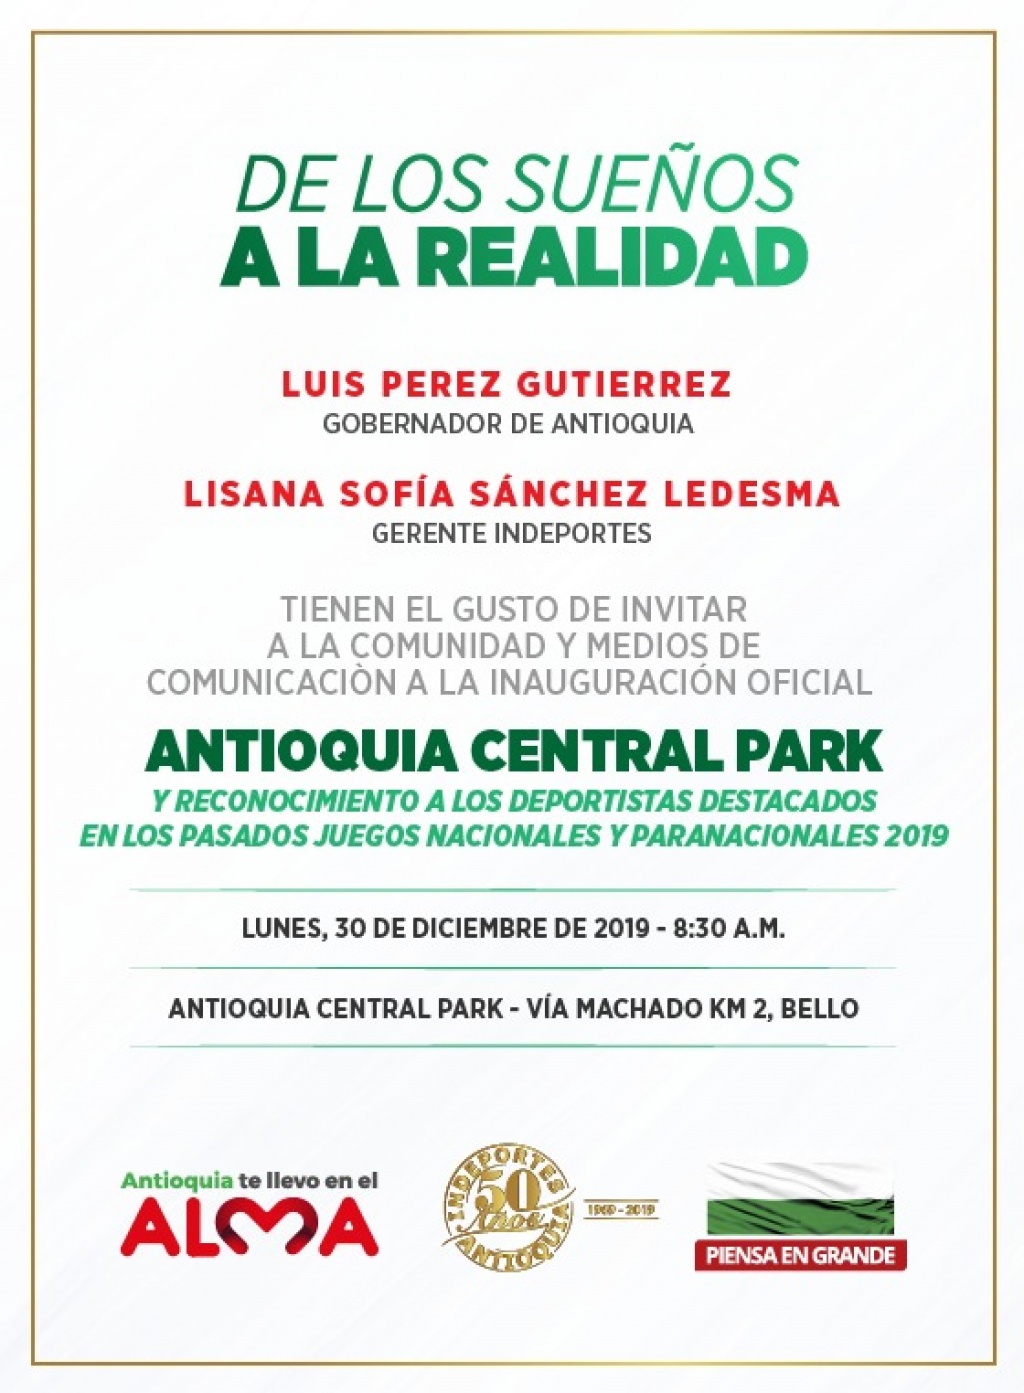 Gobernador Luis Pérez Gutiérrez, inaugura oficialmente el ANTIOQUIA CENTRAL PARK el próximo lunes 30 de diciembre de 2019